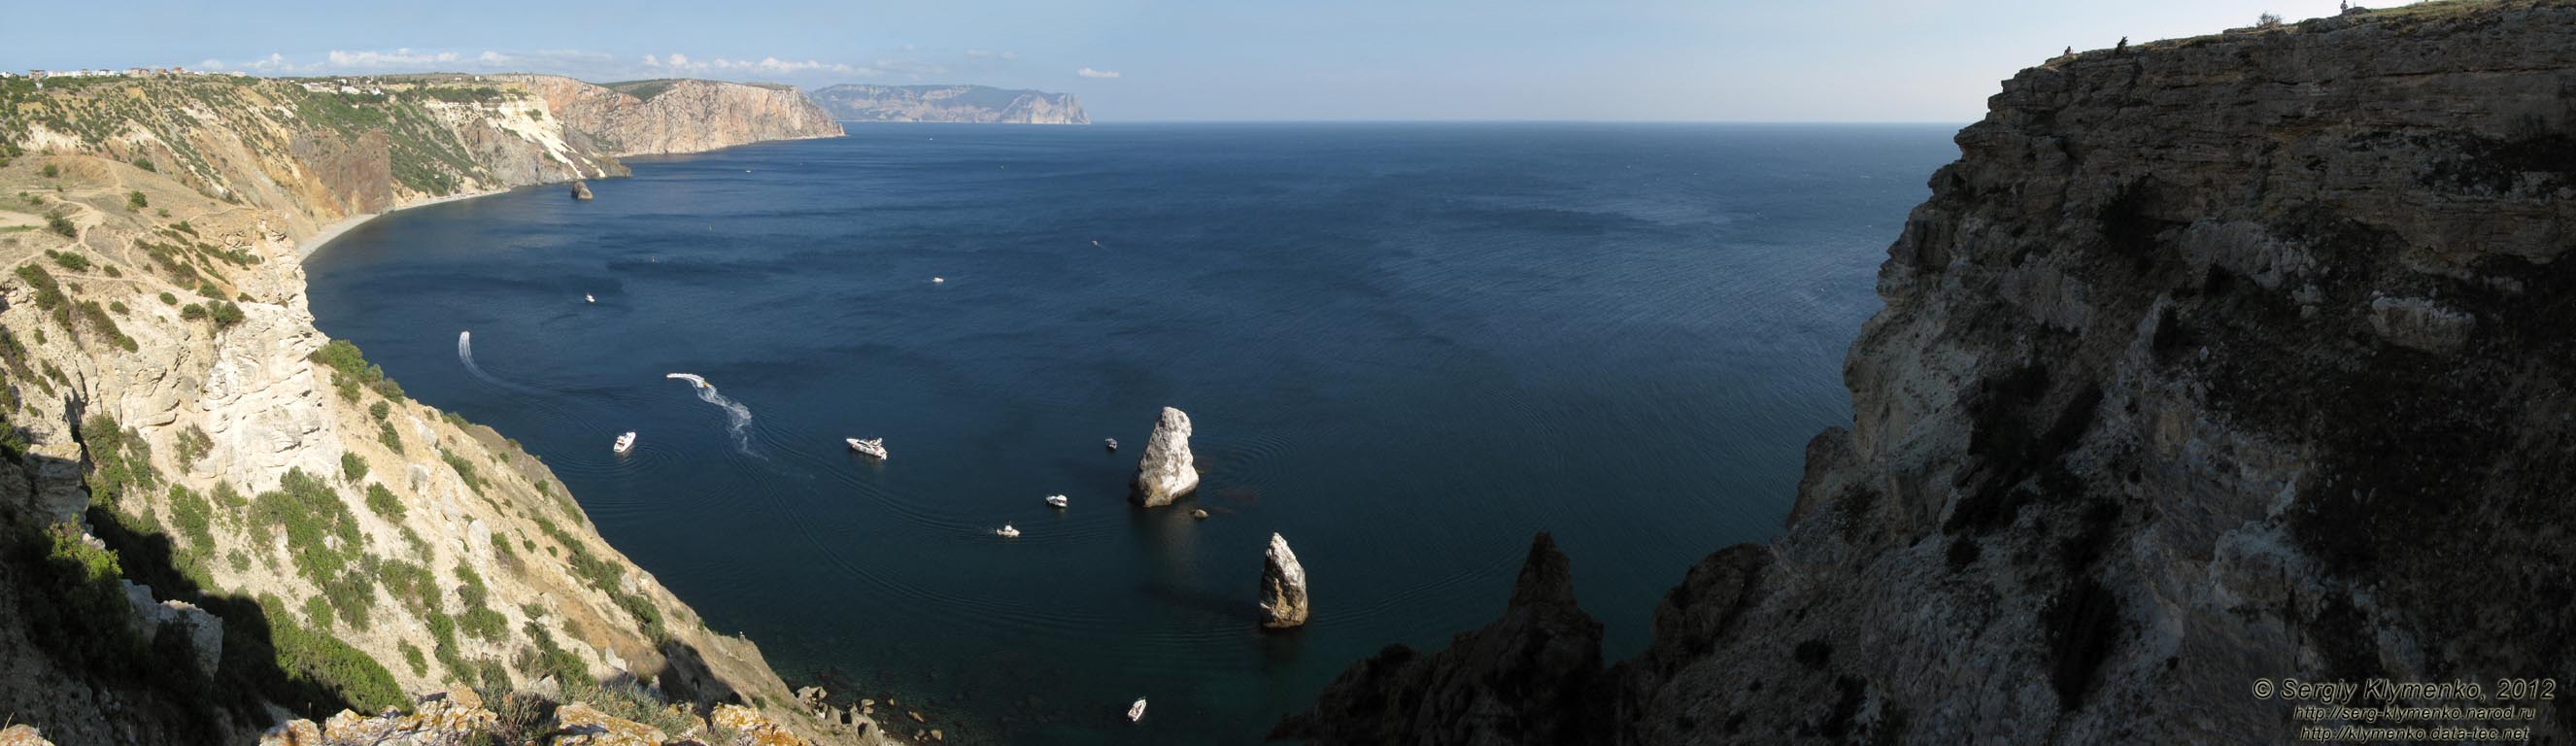 Крым. Фото. Вид на море и побережье с высоты мыса Фиолент. Панорама ~150°.